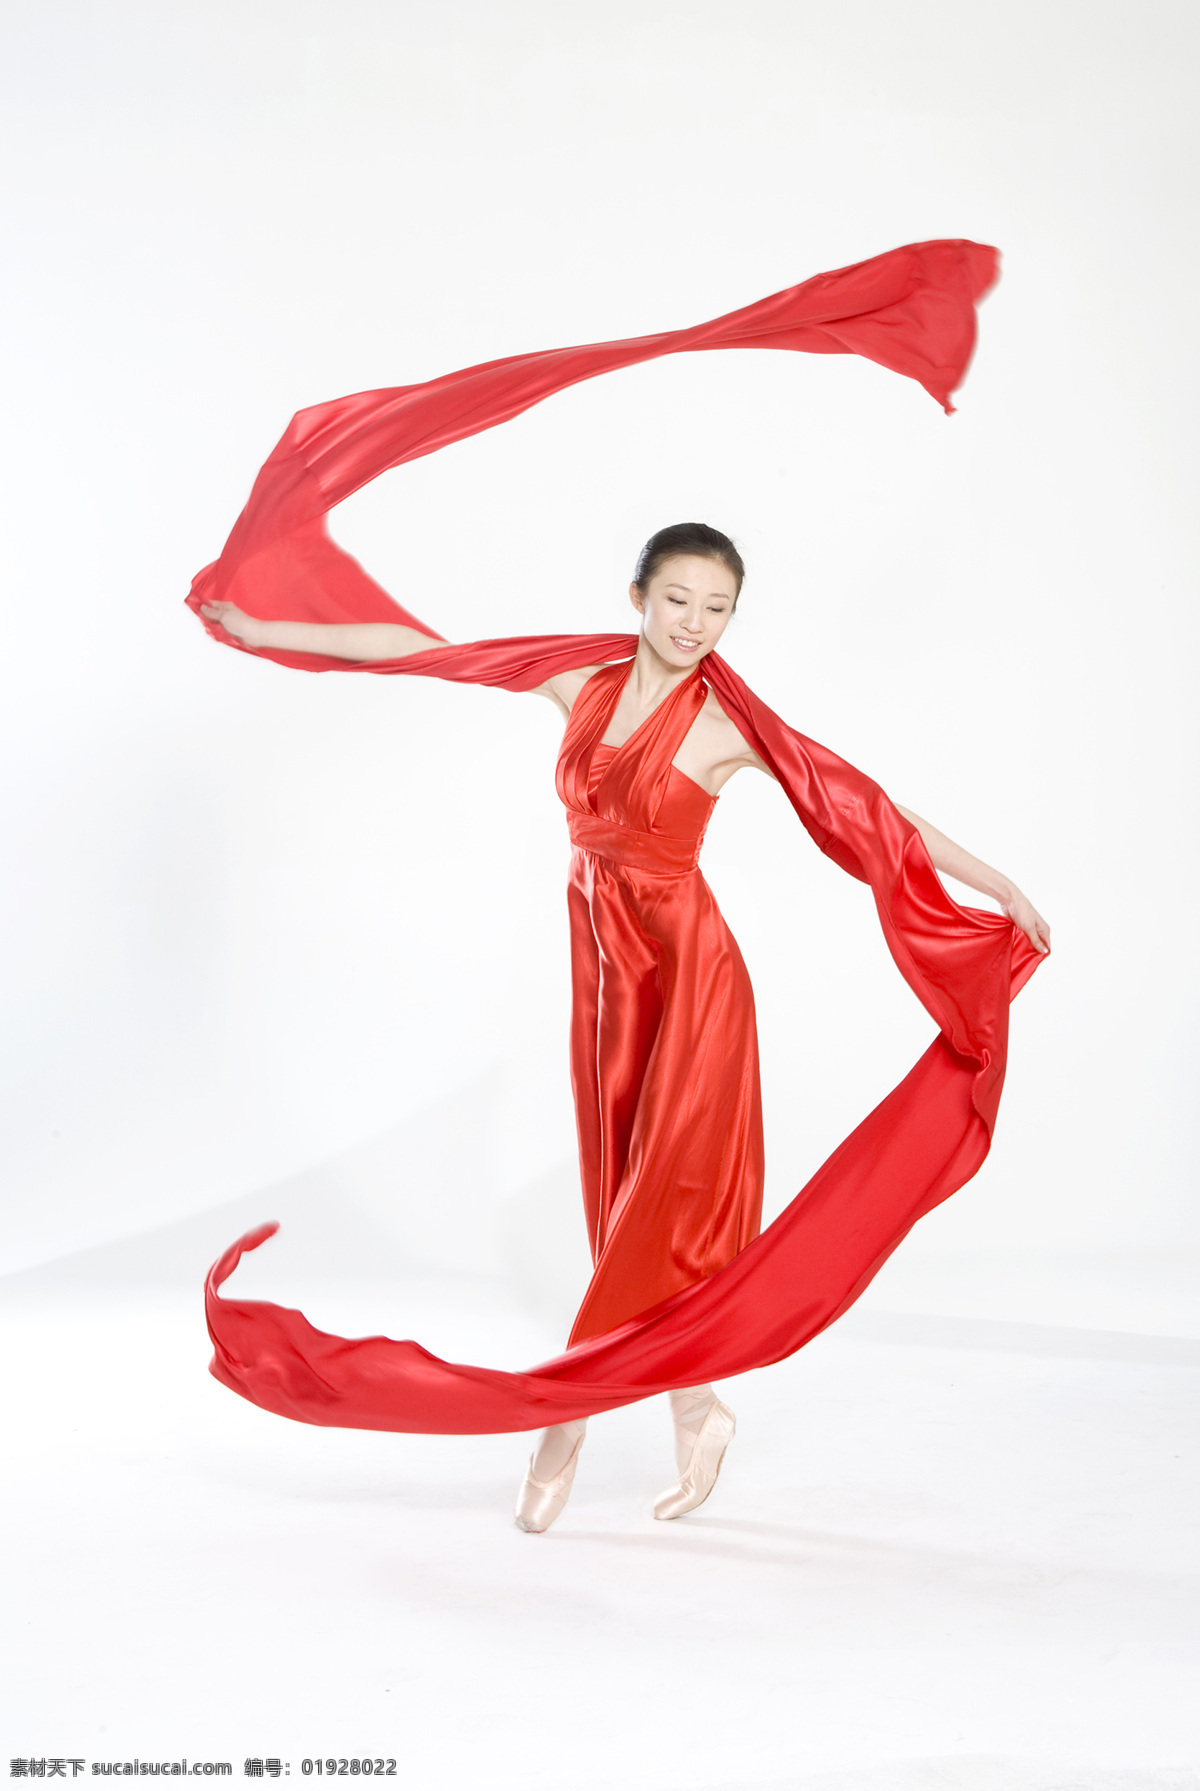 民族舞 裙子 红色 激情 舞蹈 现代舞 表演 舞者 热情 优美 全身像 女性 平衡 丝绸 丝带 飘带 飘逸 女性女人 人物图库